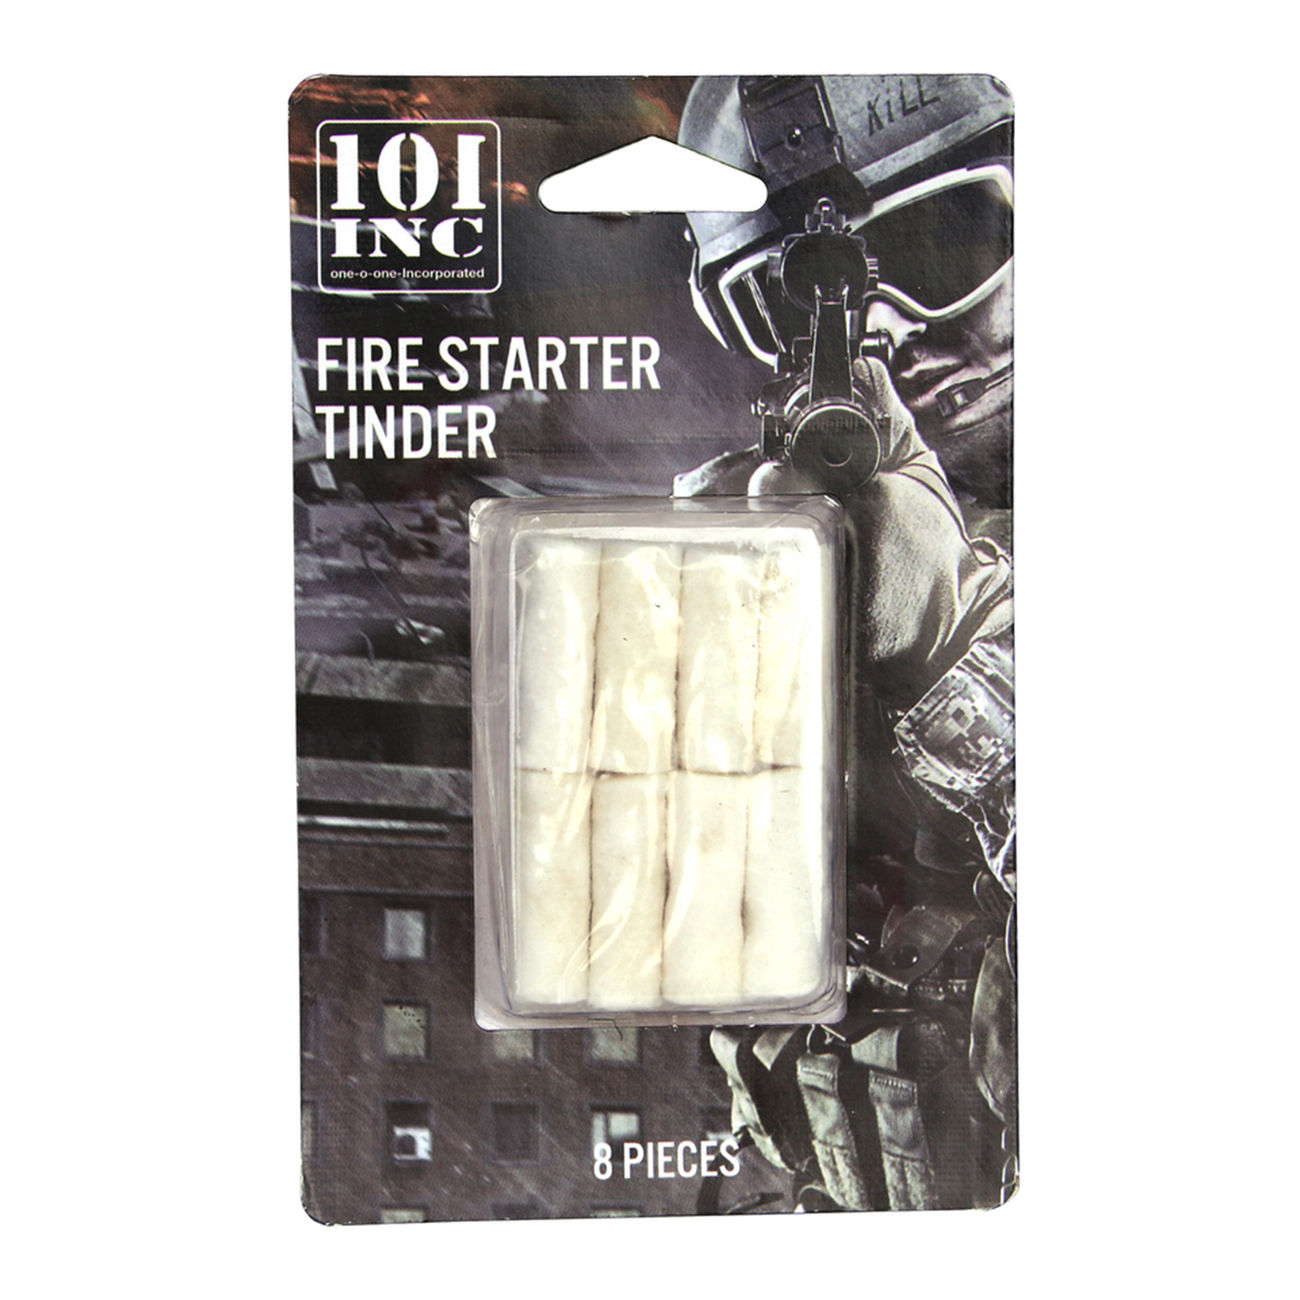 101 INC. Fire Starter Tinder  Anznder 8 Stck